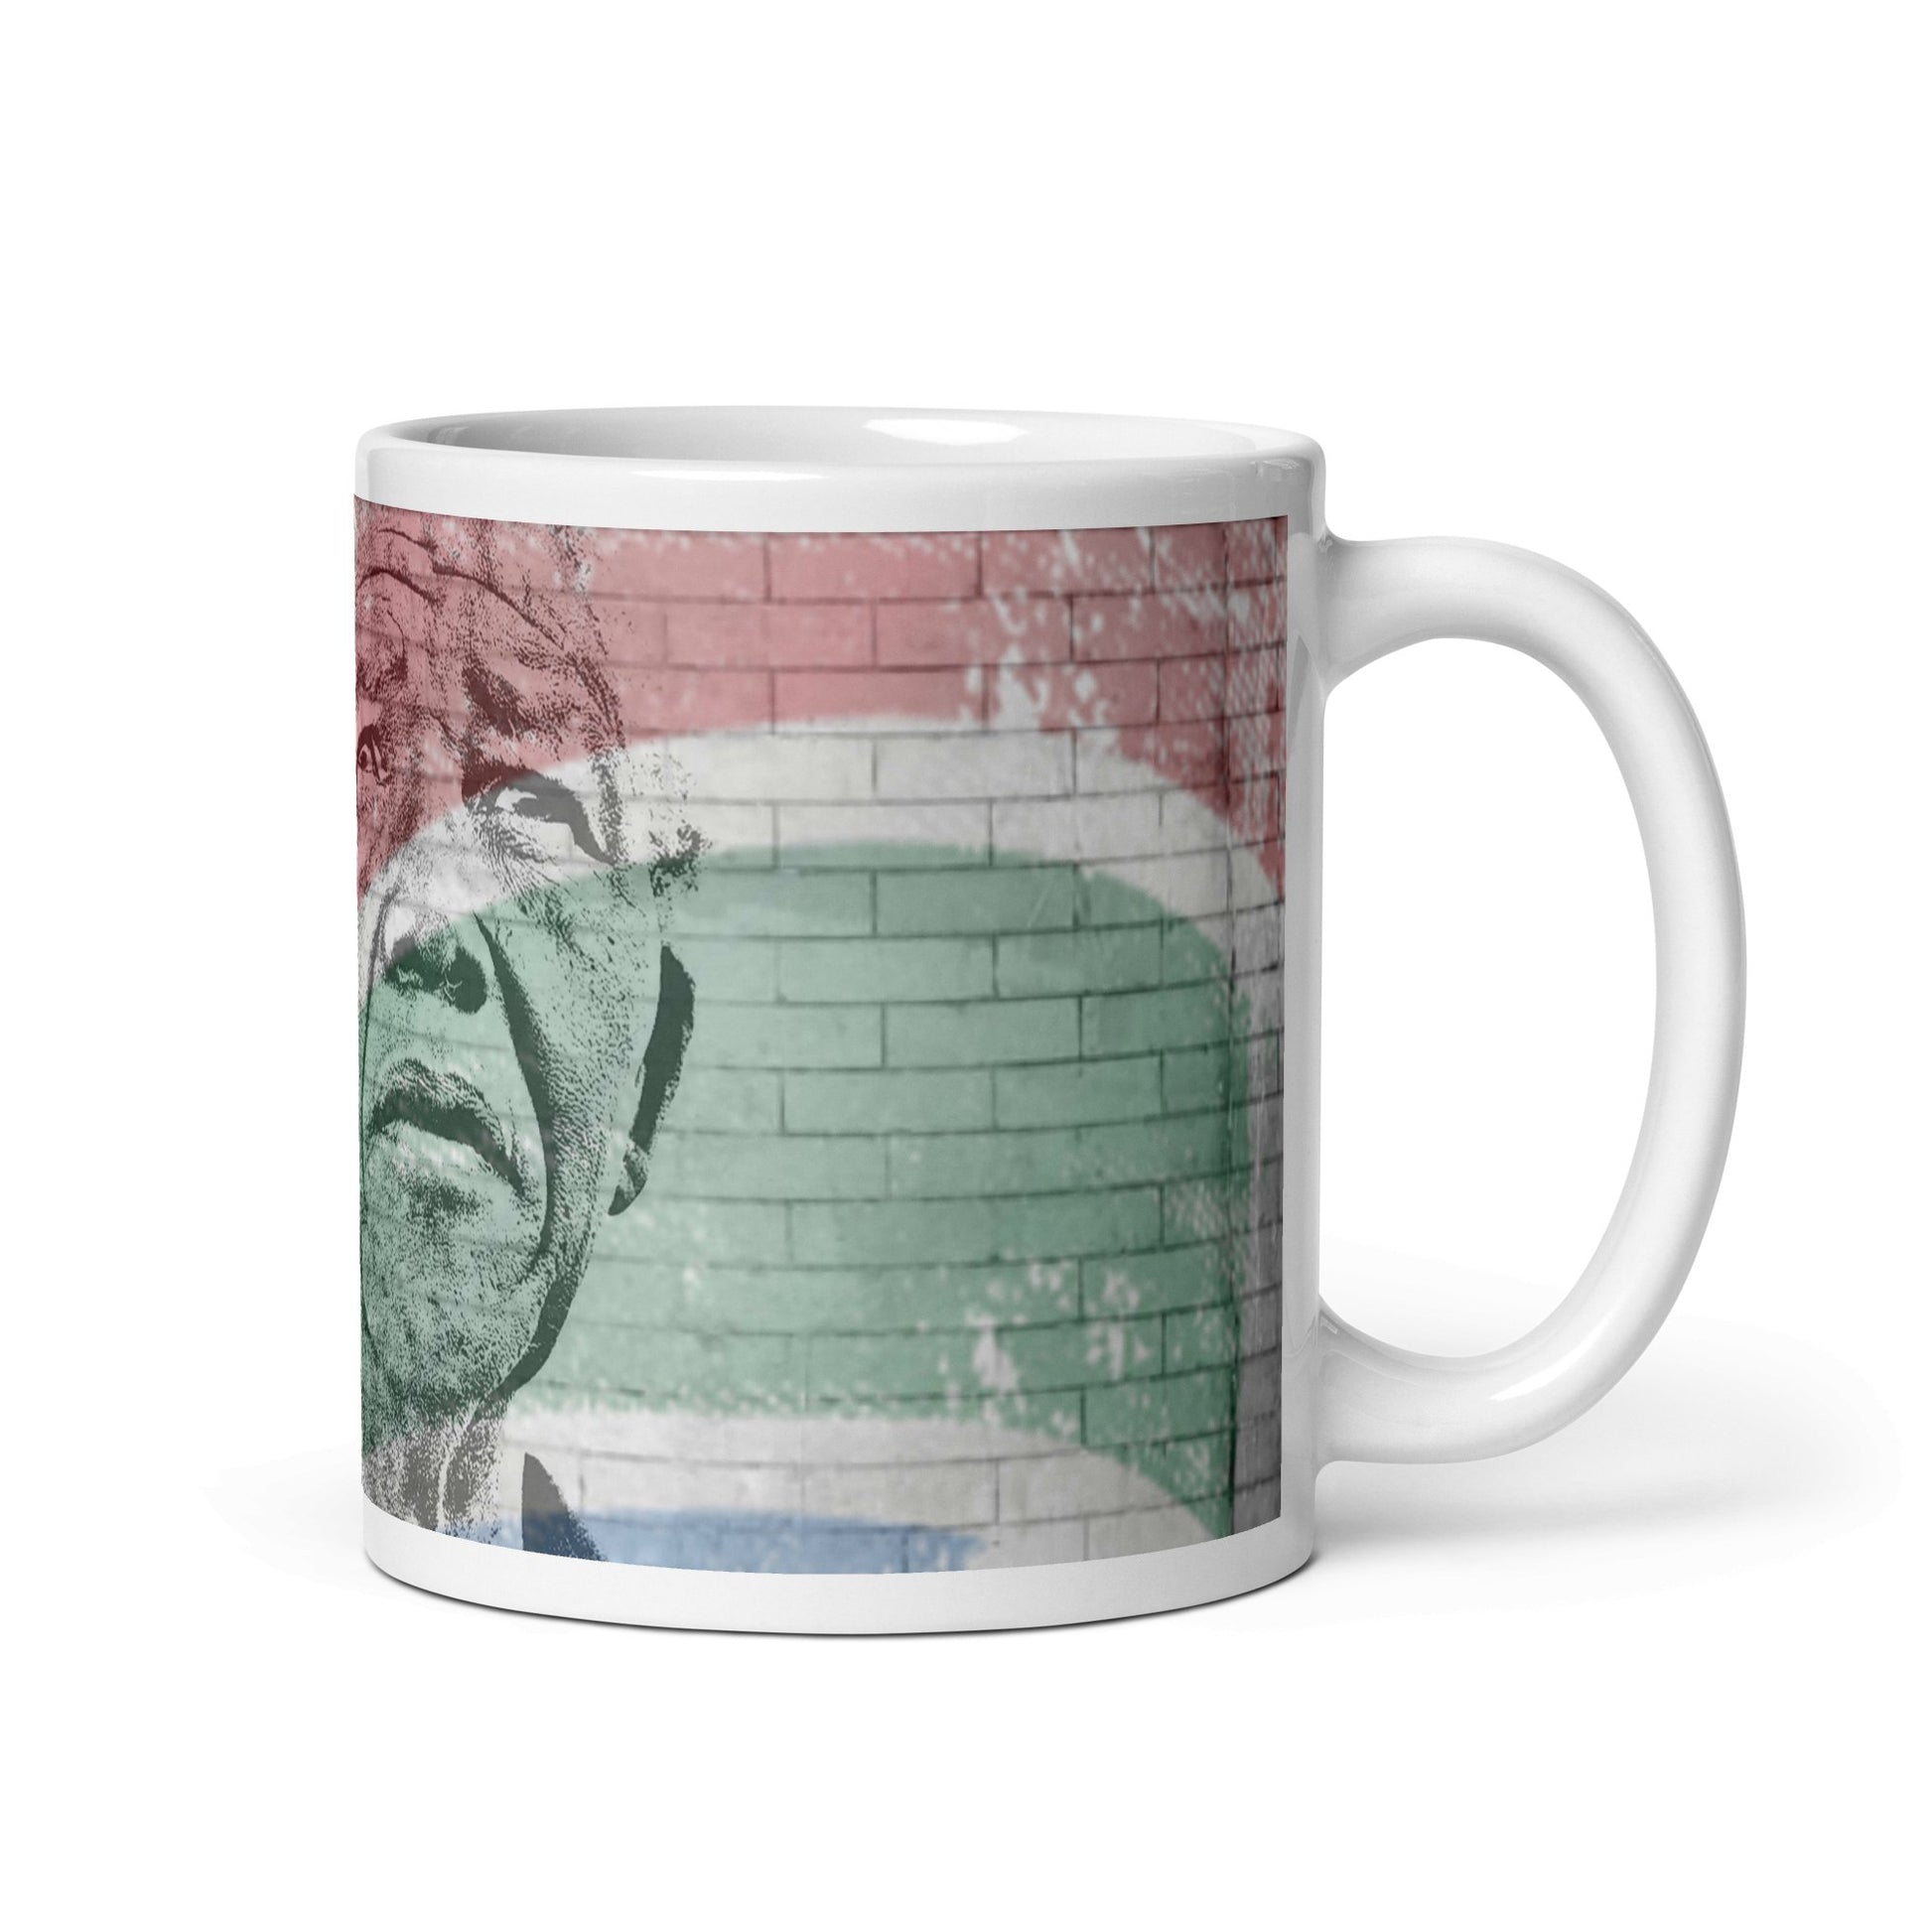 Nelson Mandela glossy mug - Souled Out World